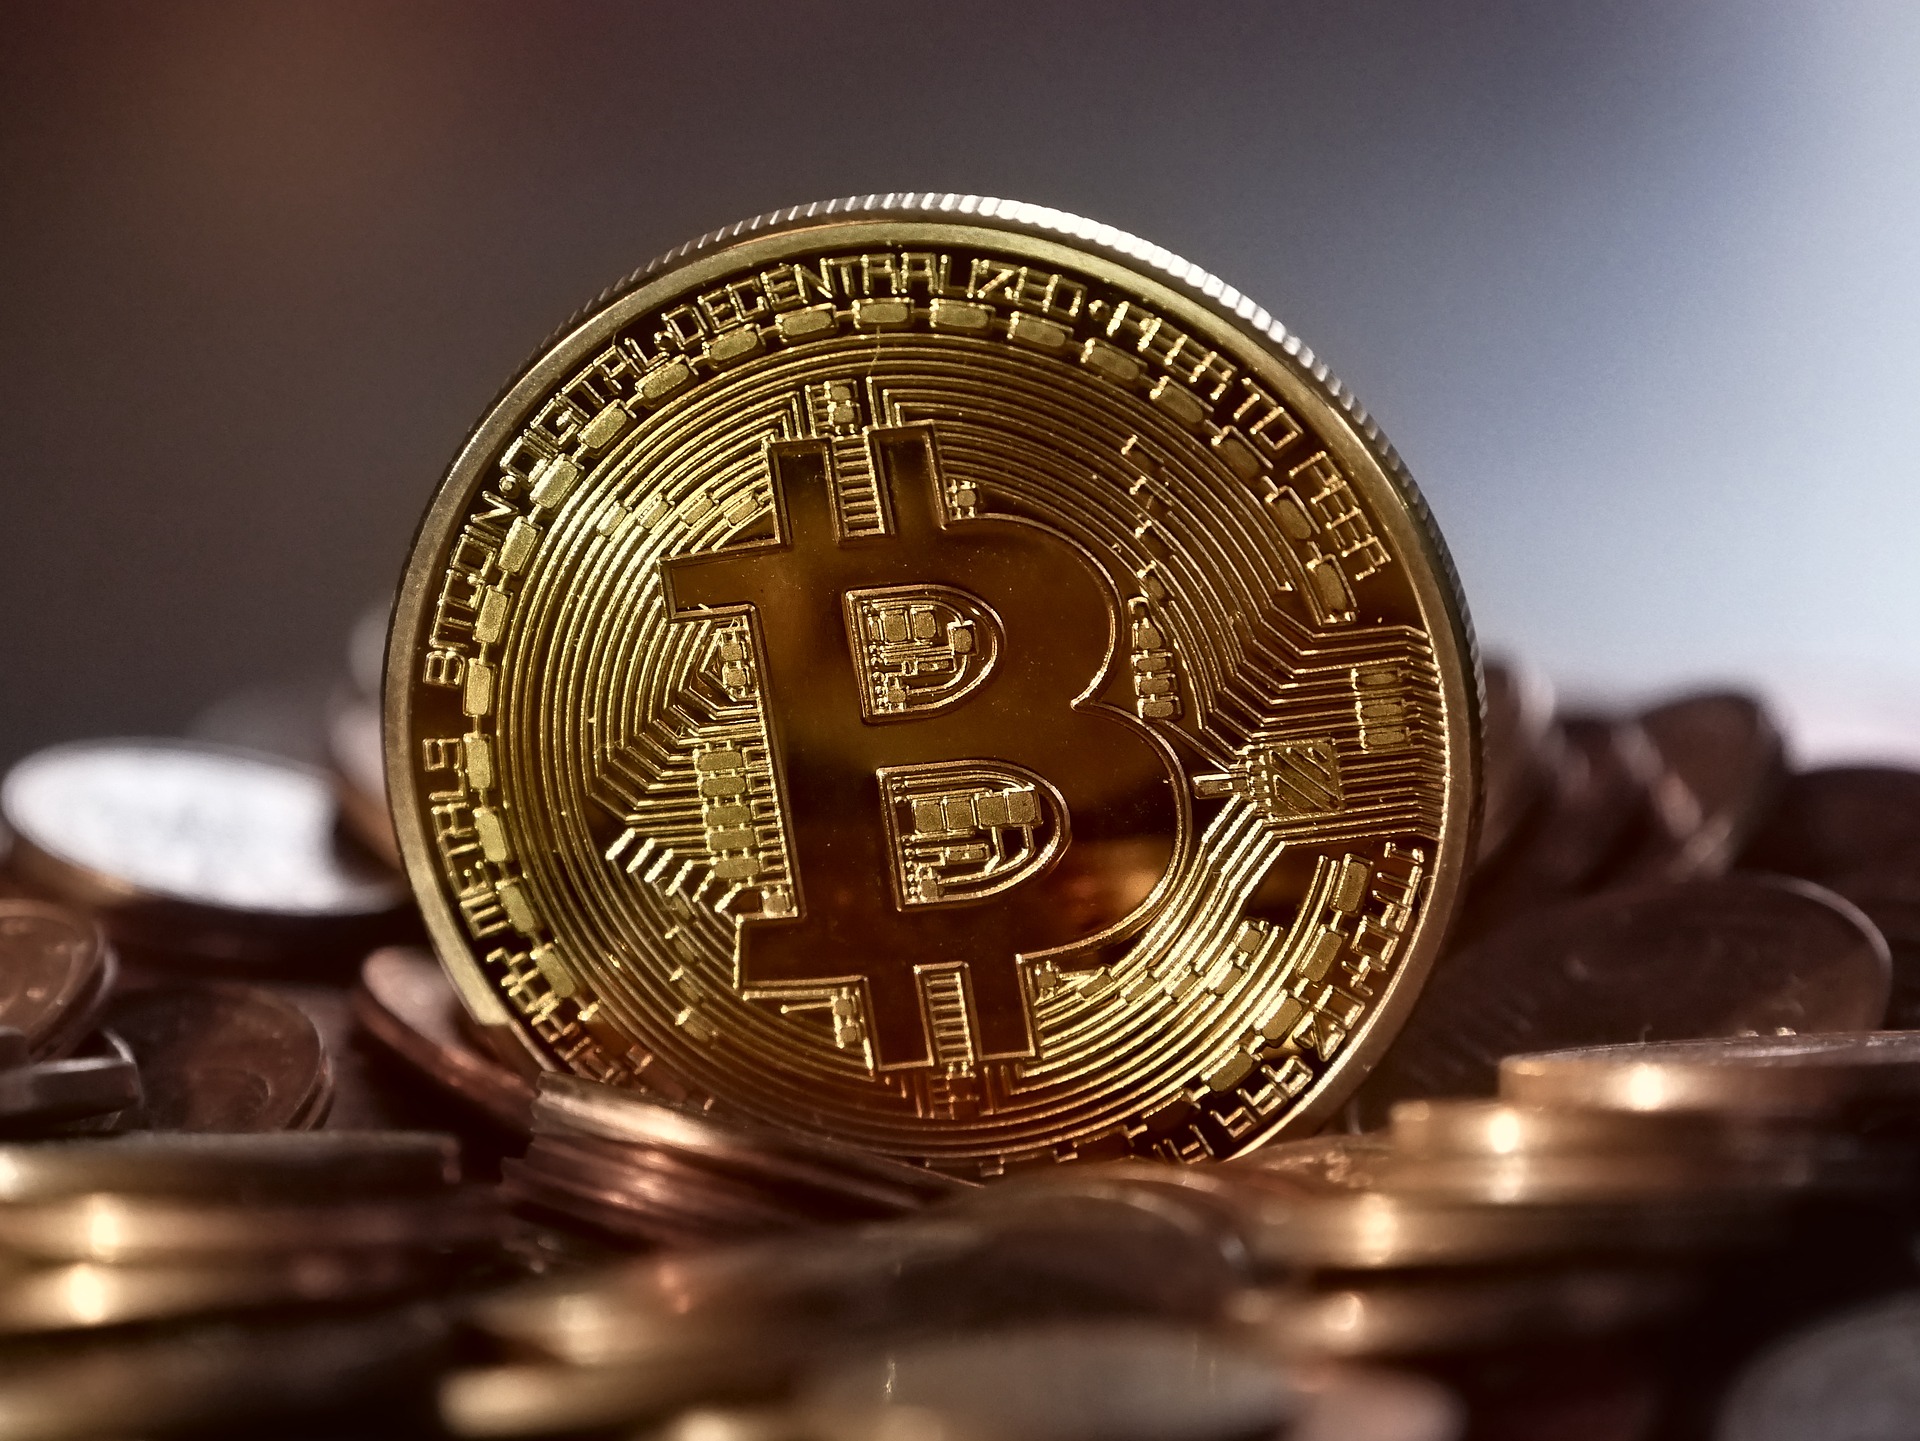 The Bitcoin News - Bitcoin and Blockchain News - The Bitcoin